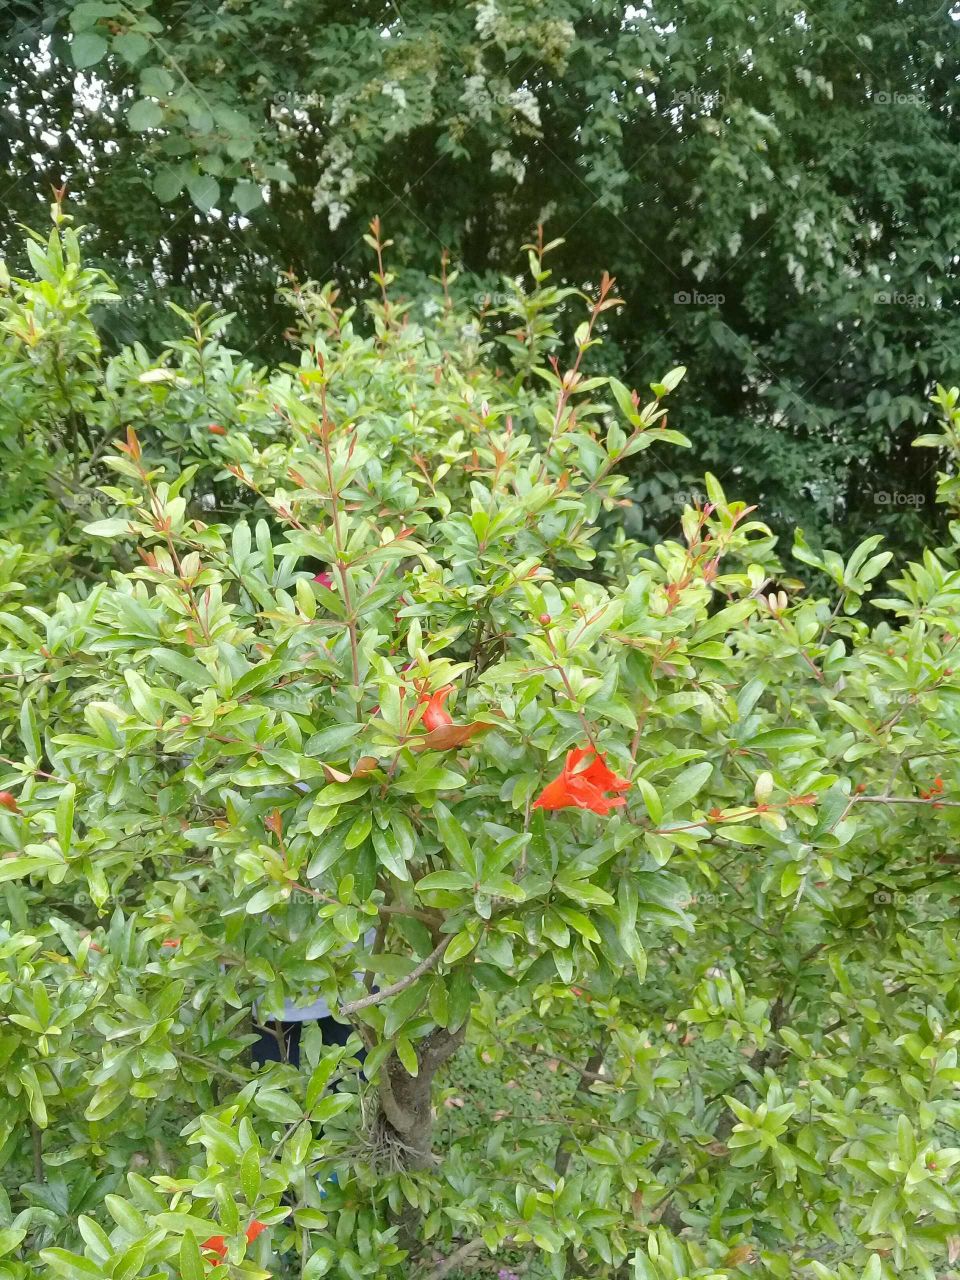 arbusto decorativo llamado "granada de jardín" comenzando a florecer